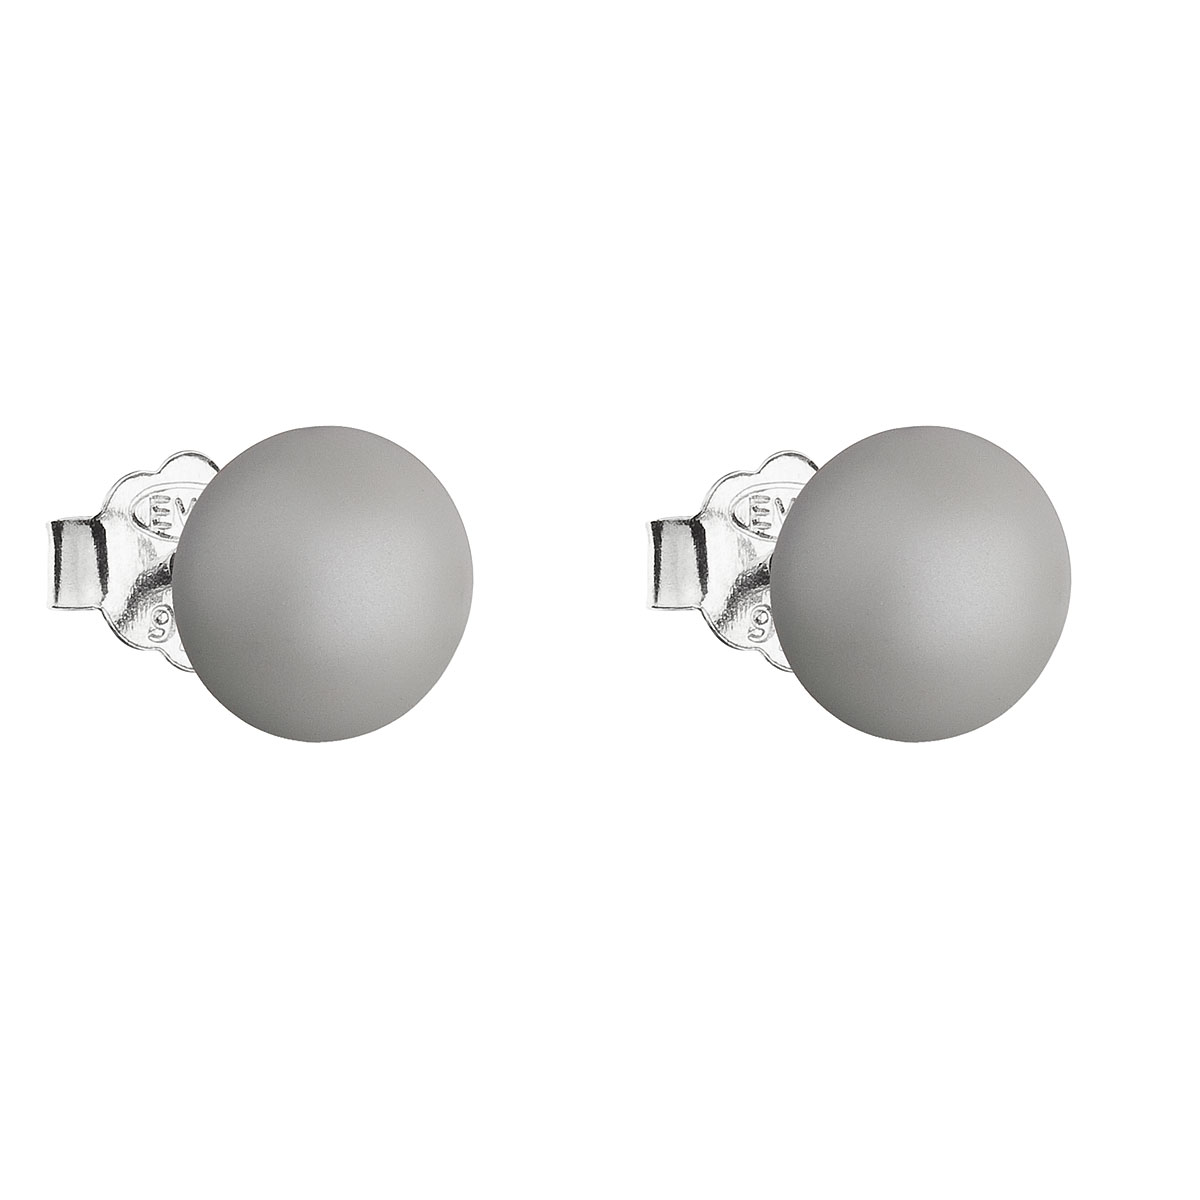 Evolution Group Stříbrné náušnice pecka s perlou Swarovski šedé kulaté 31142.3 pastel grey